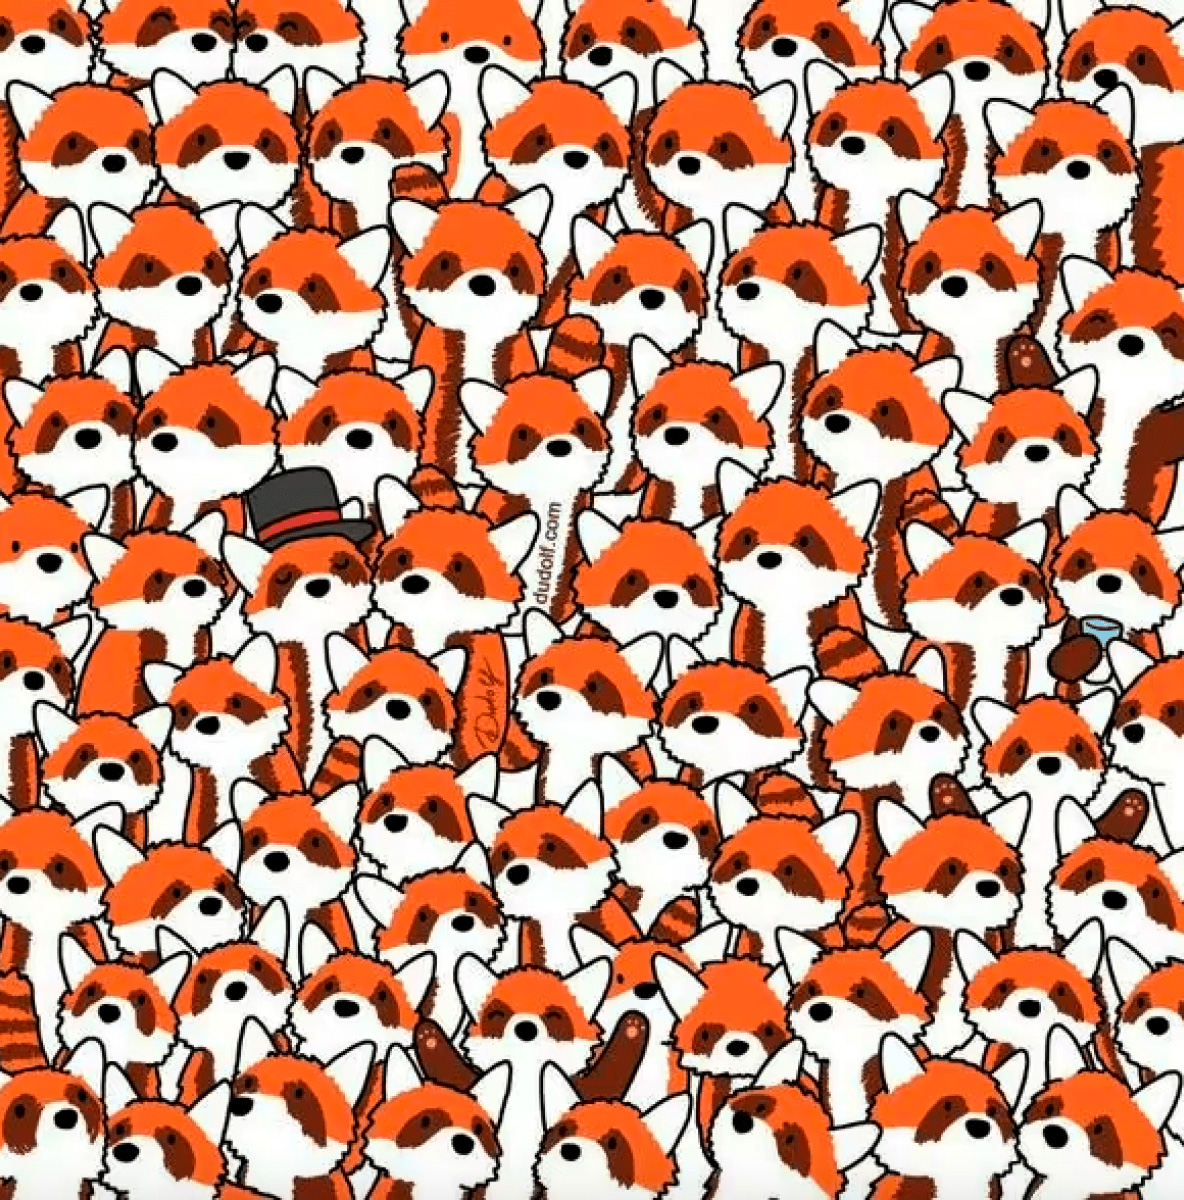 Лишь единицы способны заметить 3 лисы в толпе красных панд: тест на идеальное зрение быстро, пандами, Простая, несколько, решил, выложить, рисунок, удивлению, загадка, очень, стала, популярна, первые, тестирование, попробовали, пройти, человек Если, тысяч, недавно, нашли